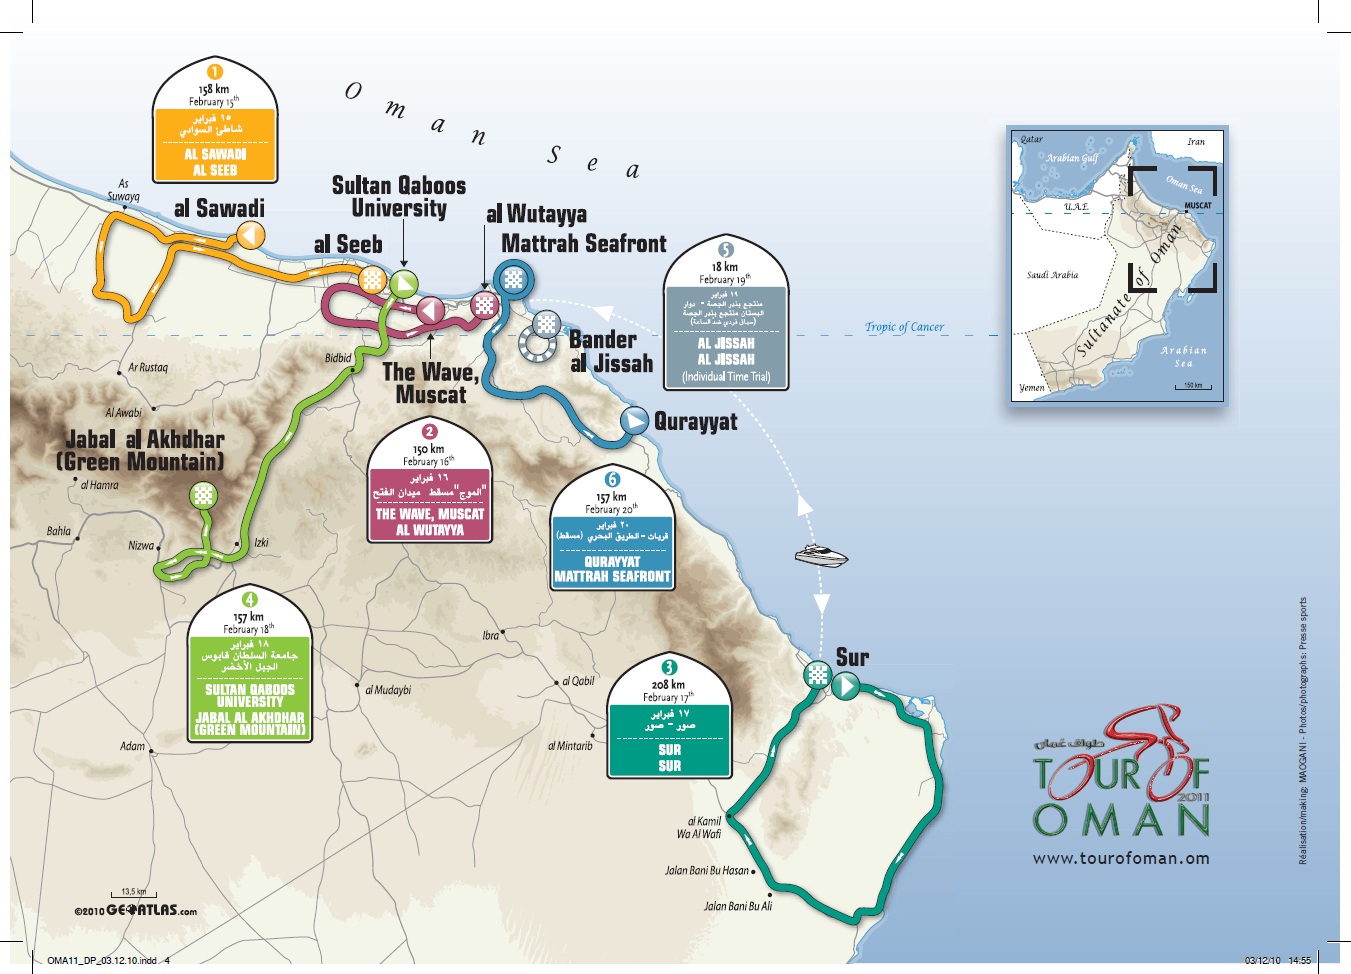 Streckenverlauf Tour of Oman 2011